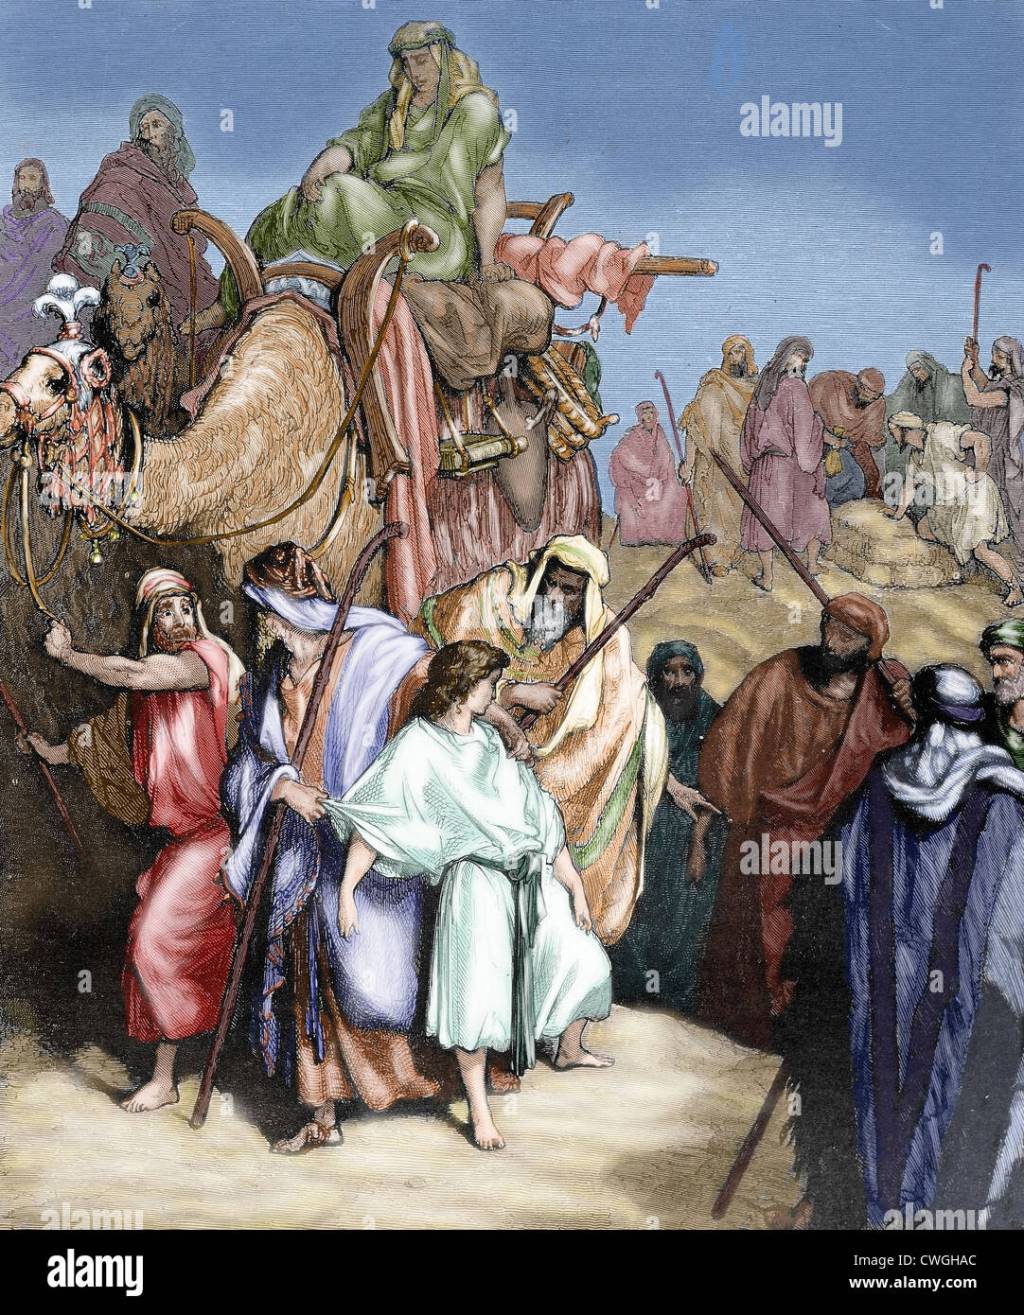 Que podríamos aprender de la historia de José el egipcio hijo de Jacob